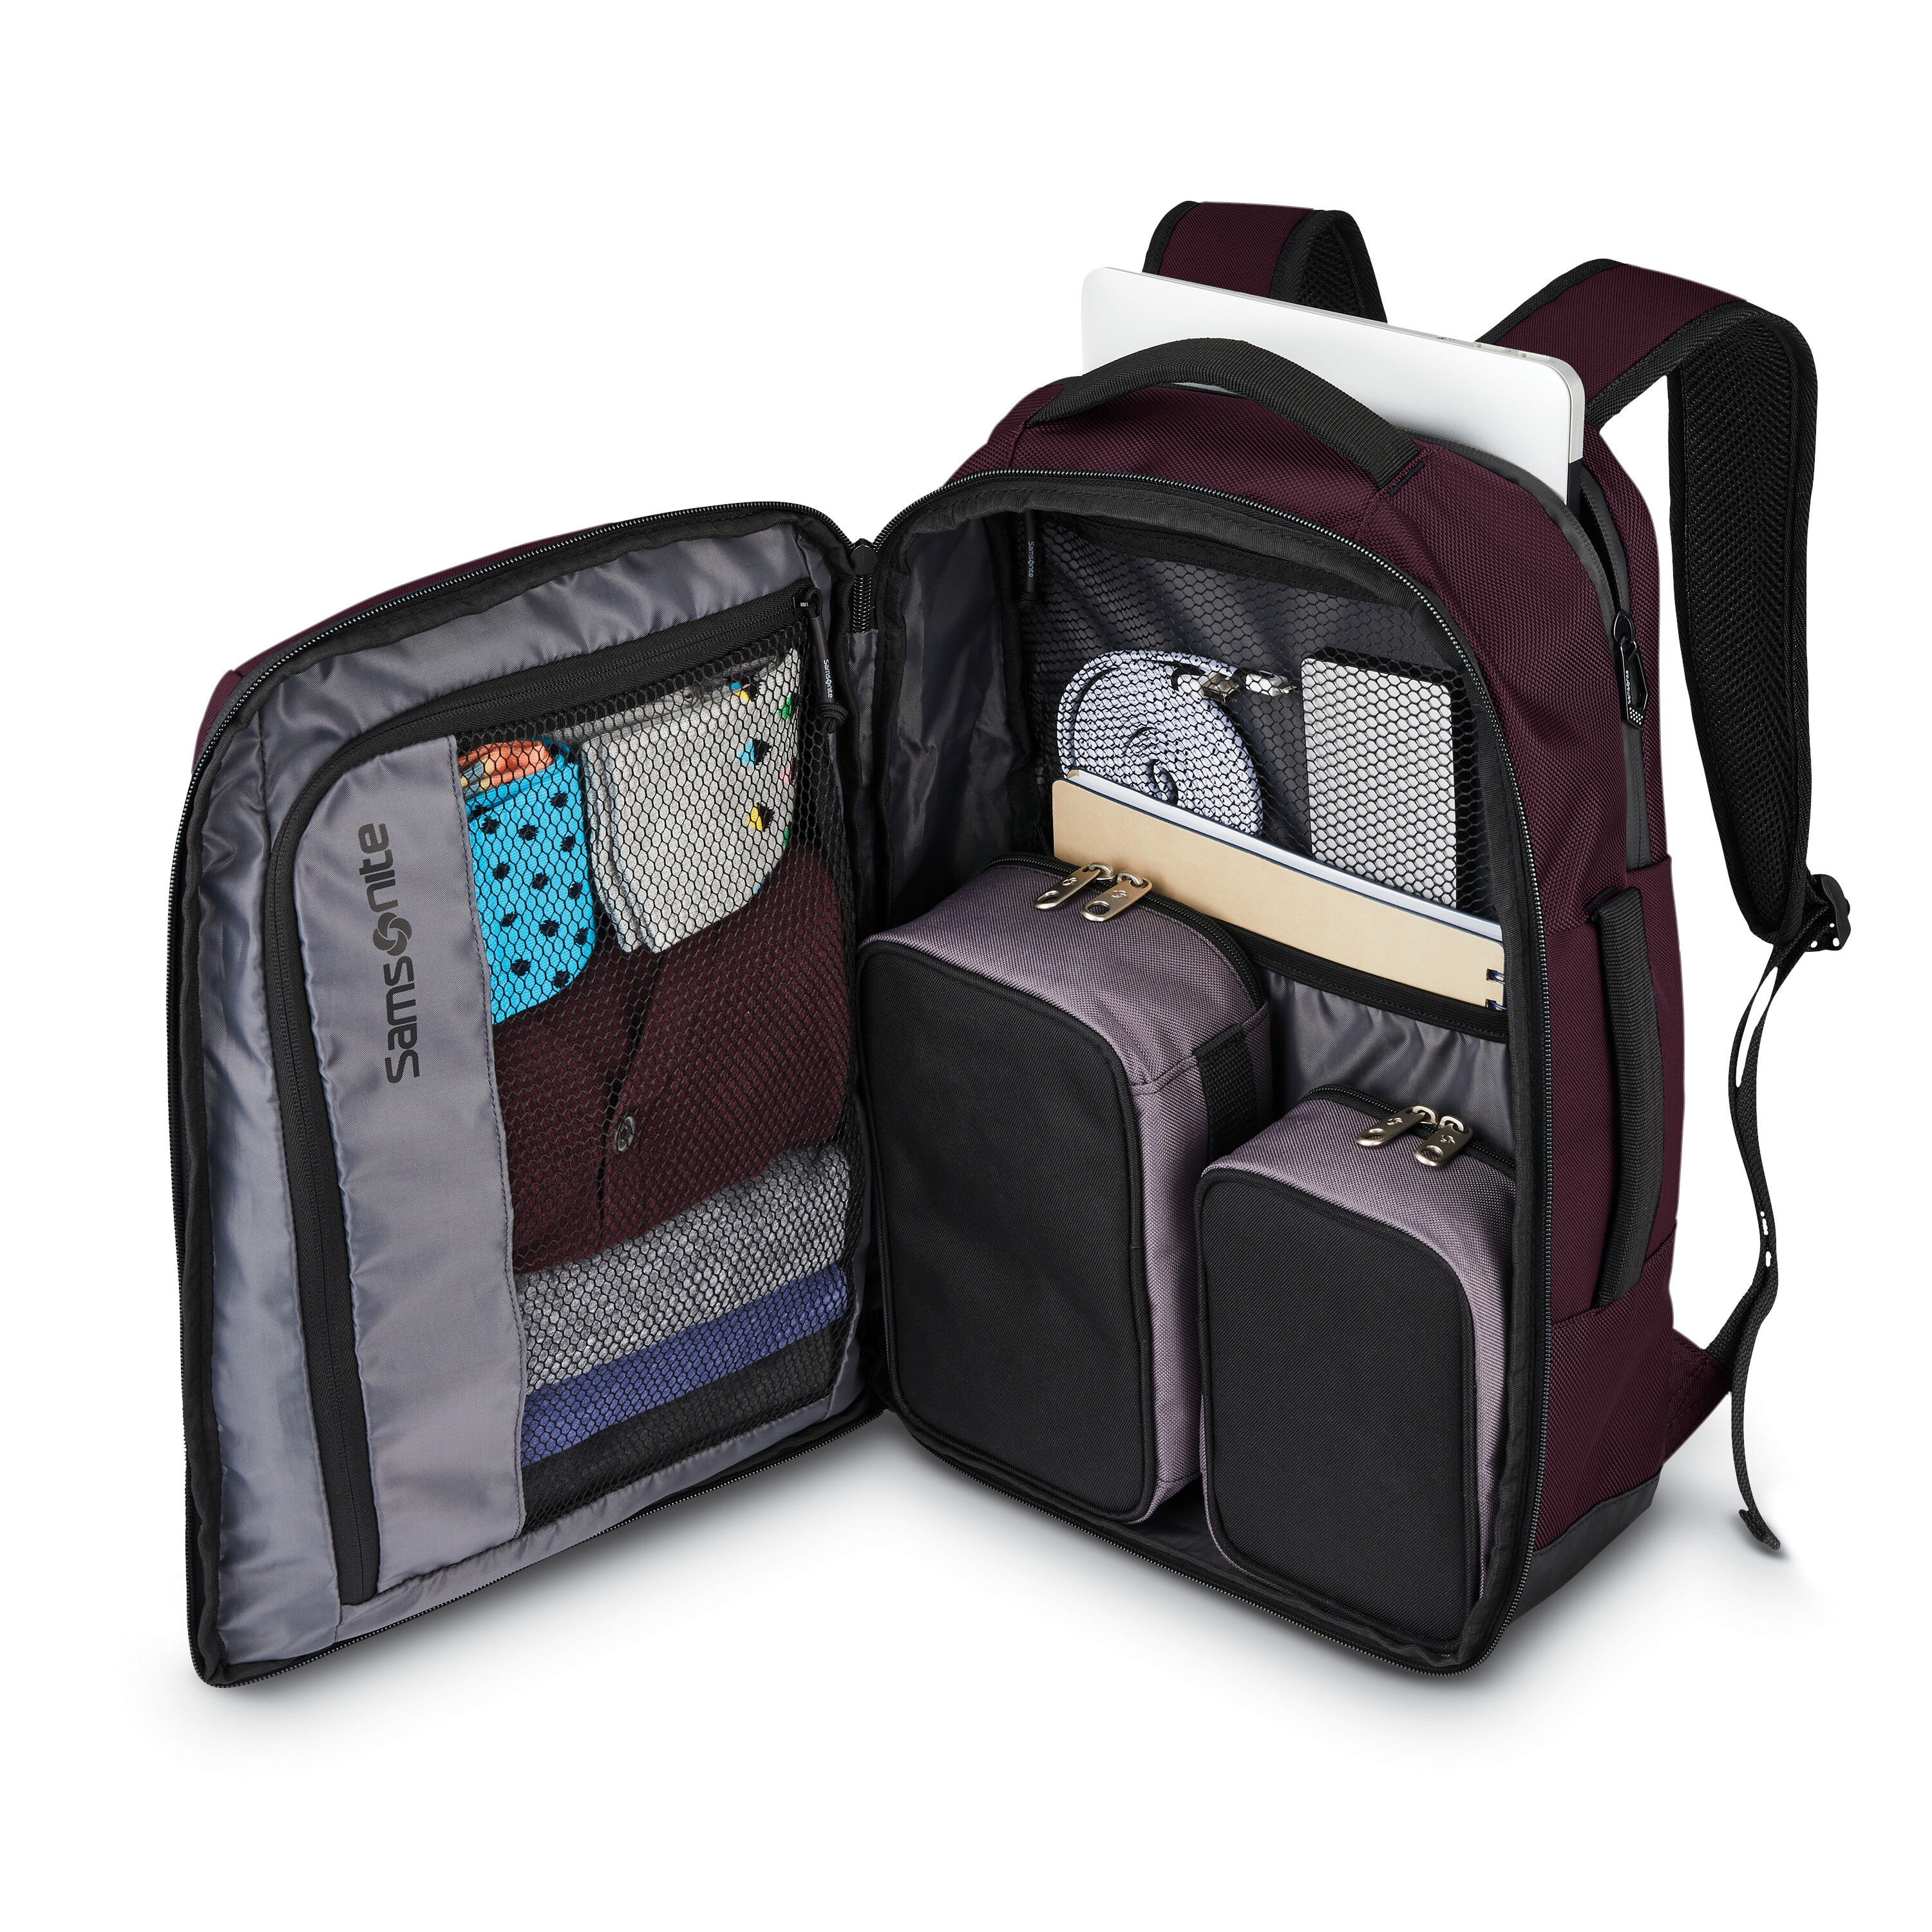 Buy Detour Travel Backpack for USD 103.99 | Samsonite US